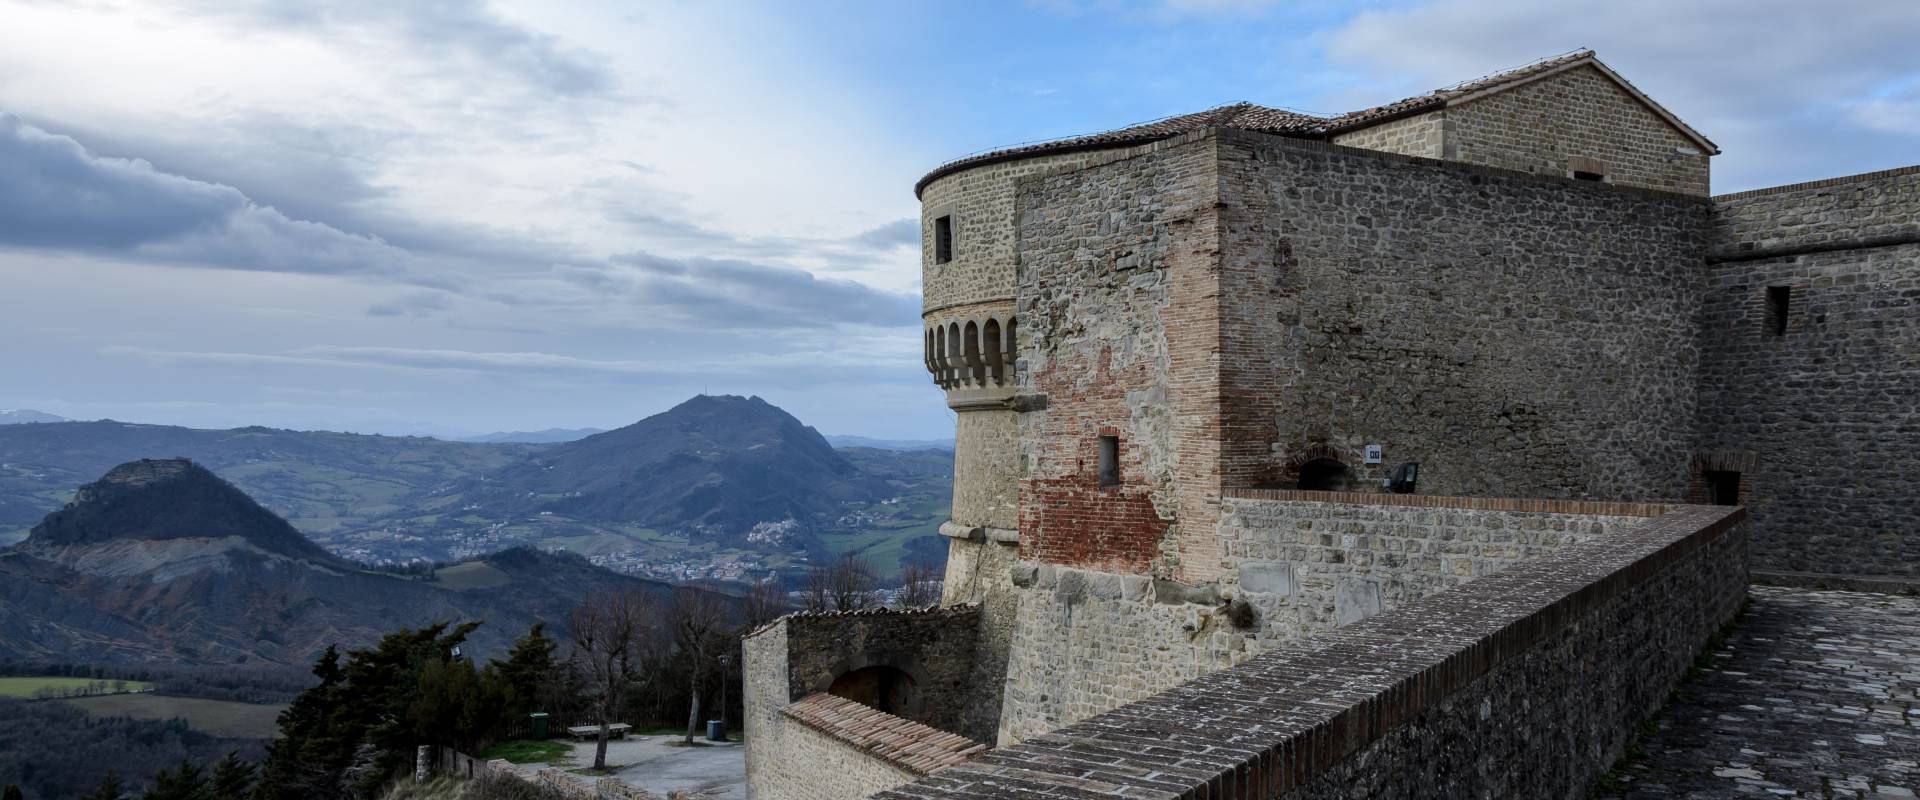 Fortezza di San Leo photo by Paolo Crociati